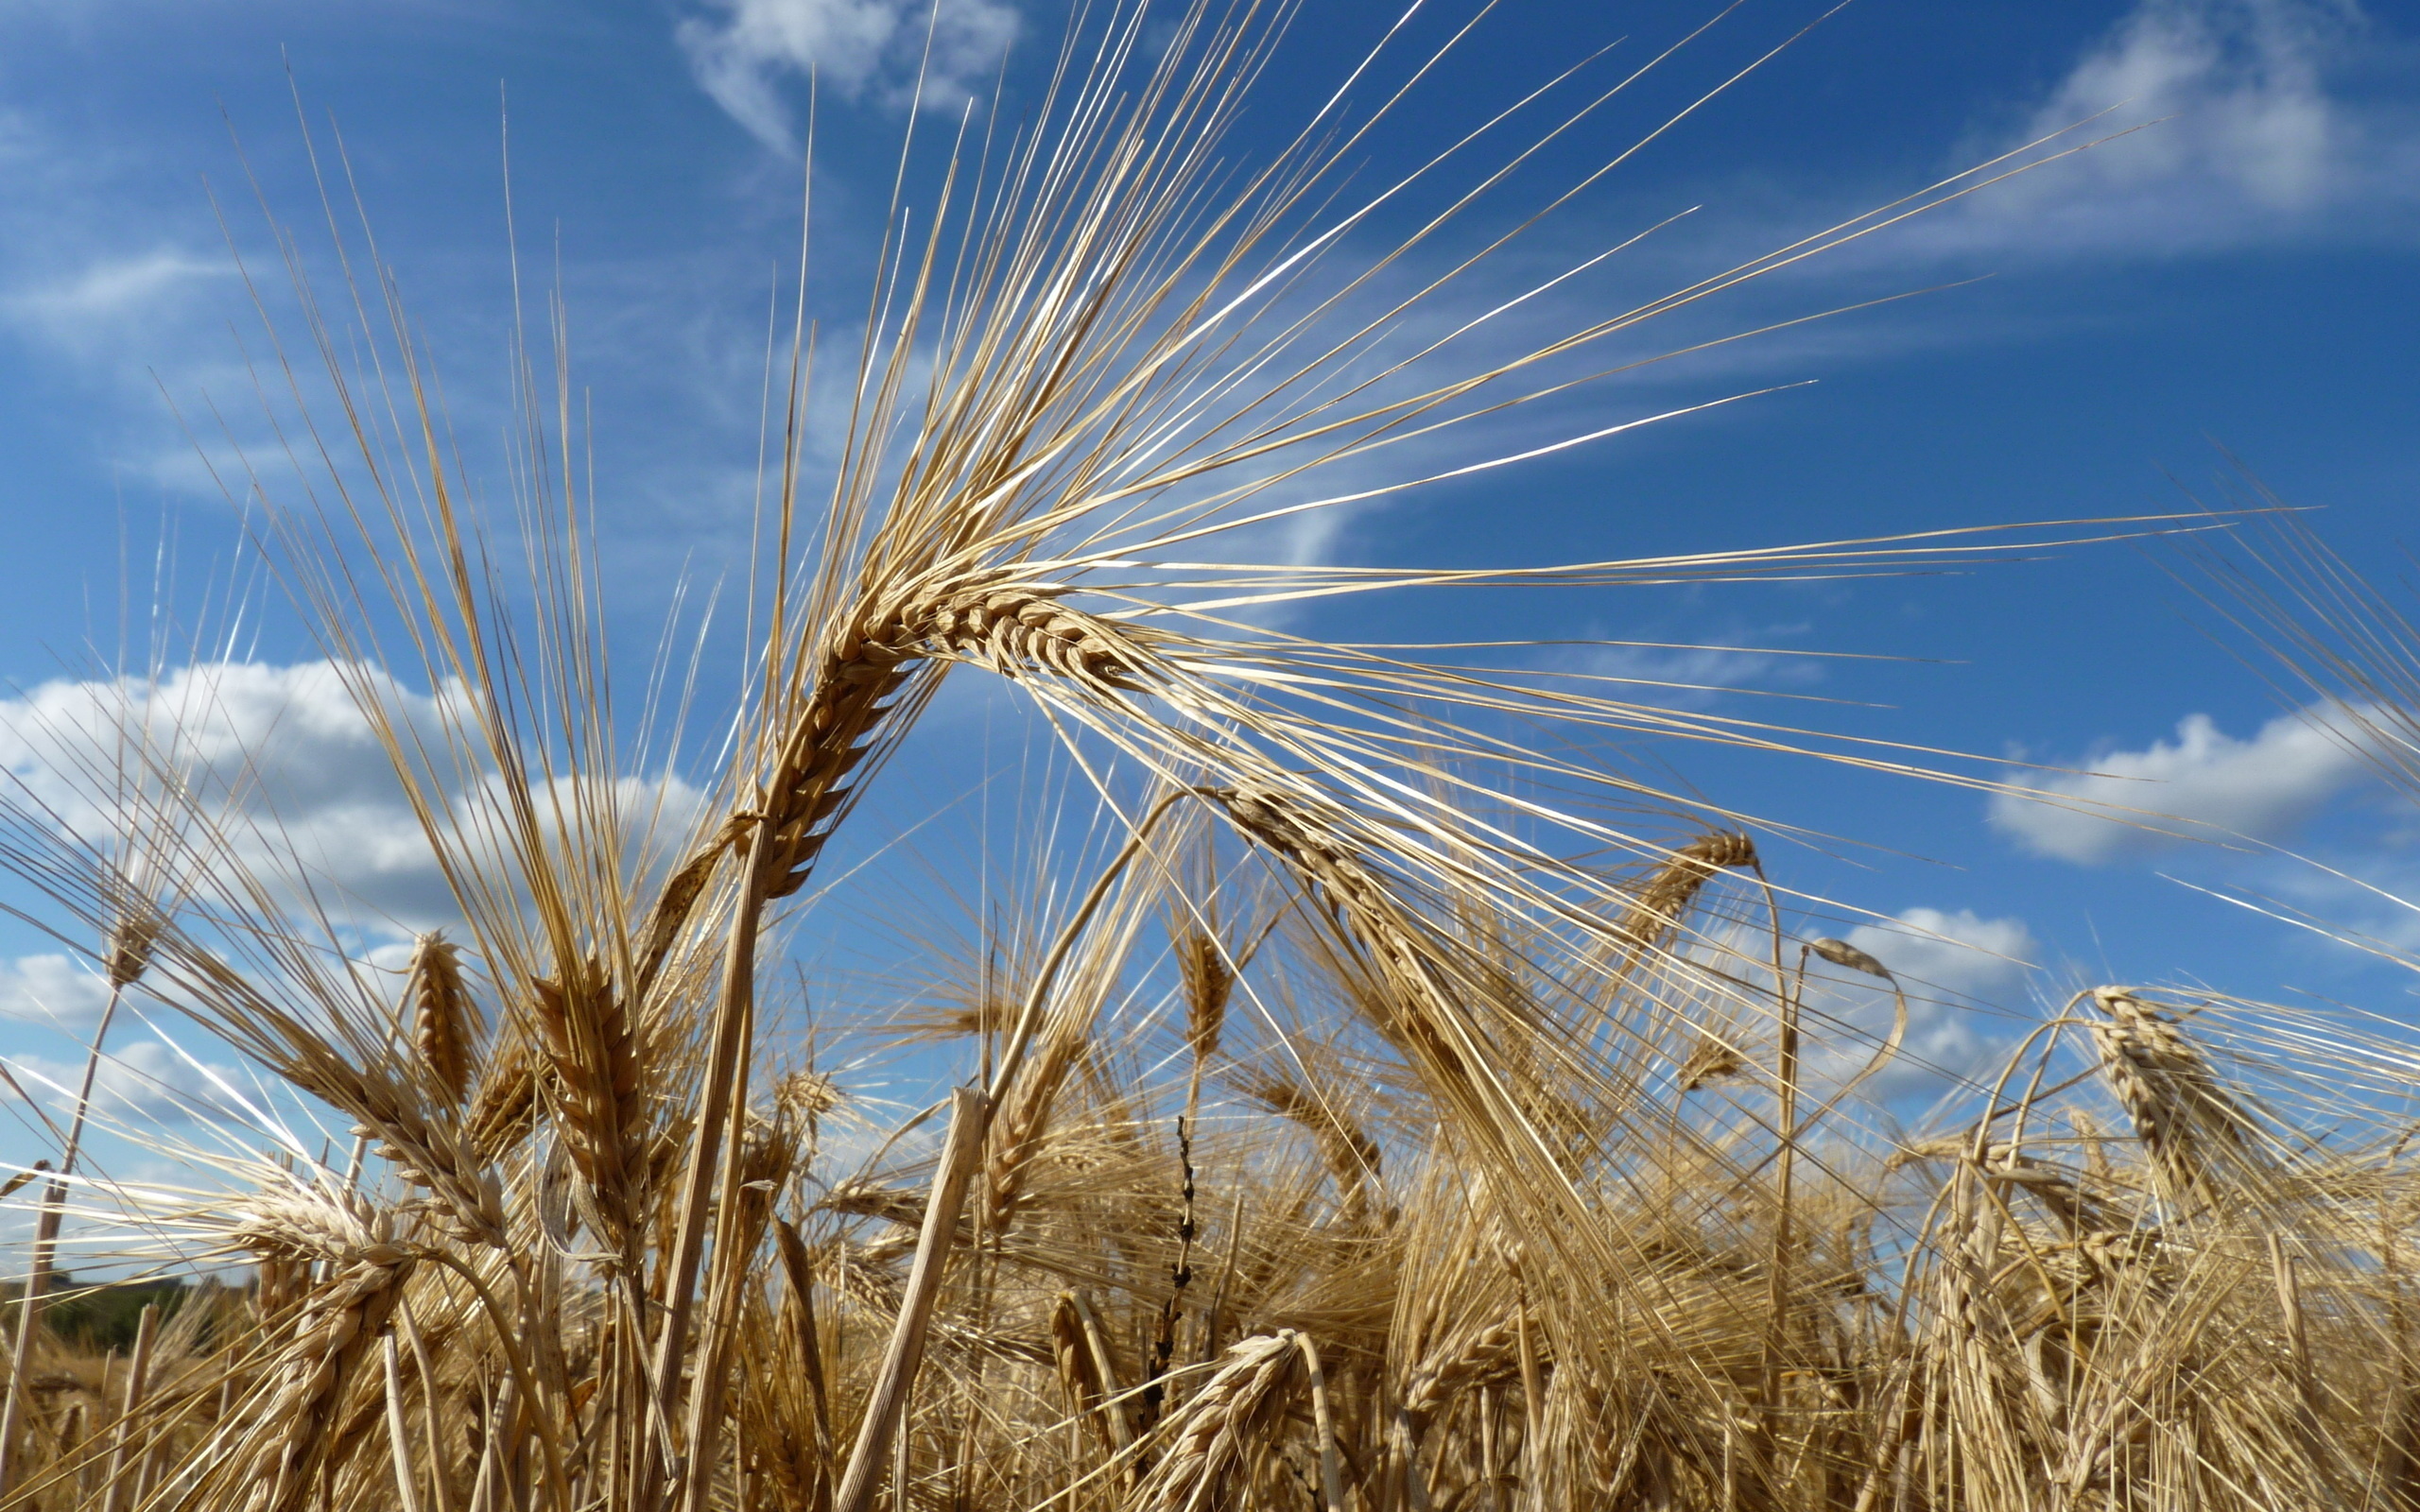 Пшеница фото окружающий мир 3 класс